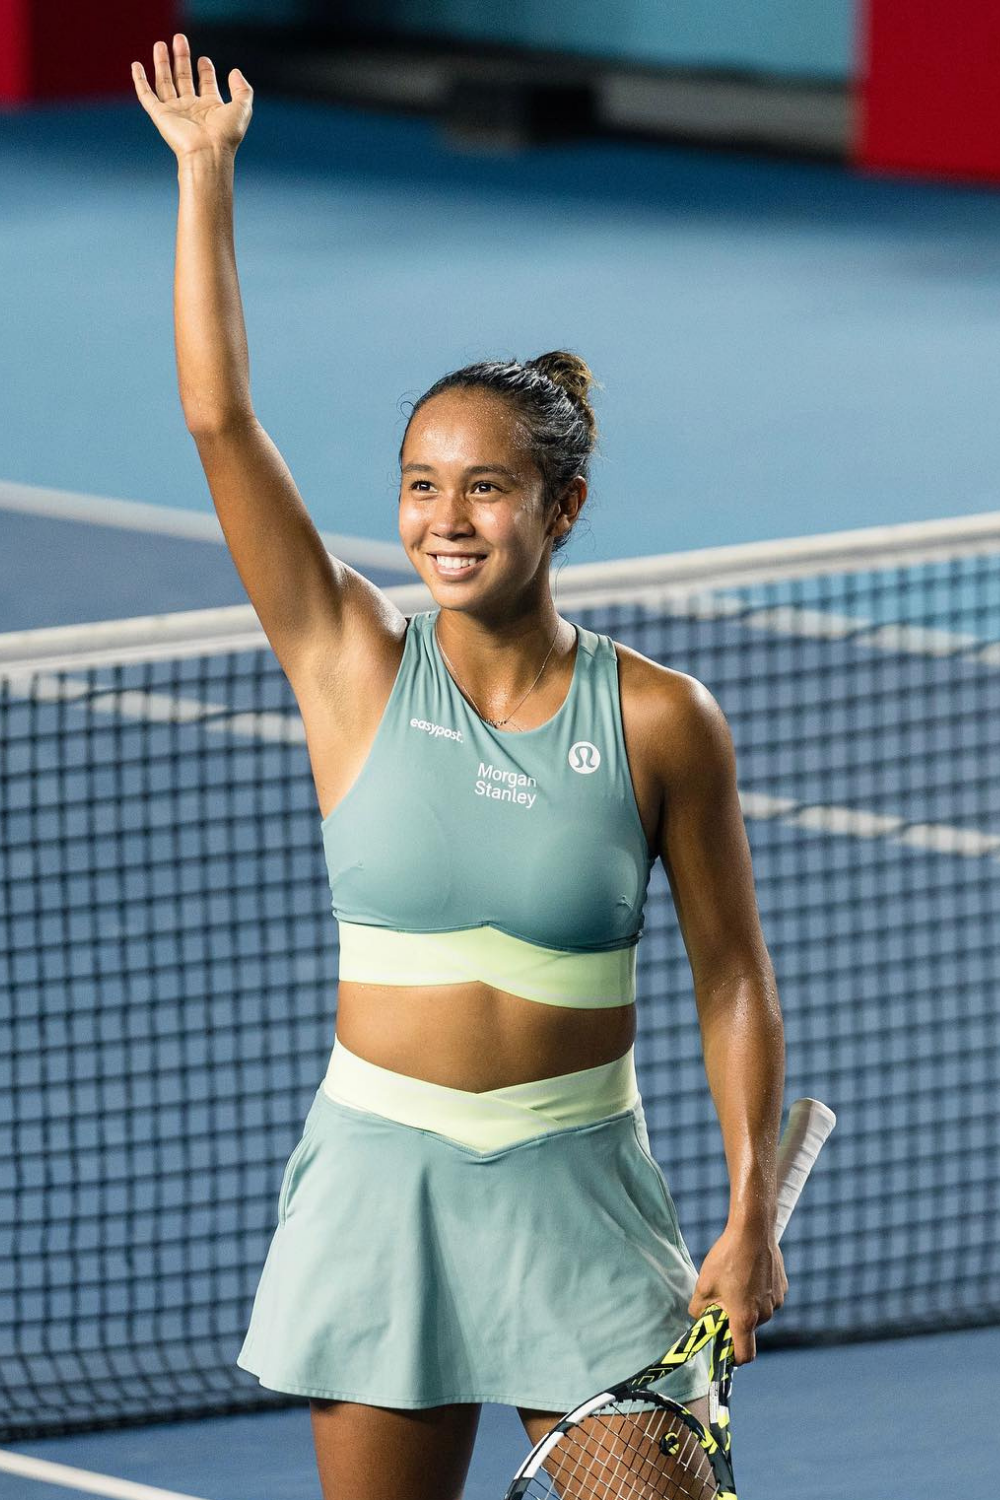 Leylah Annie Fernandez, A Professional Tennis Player